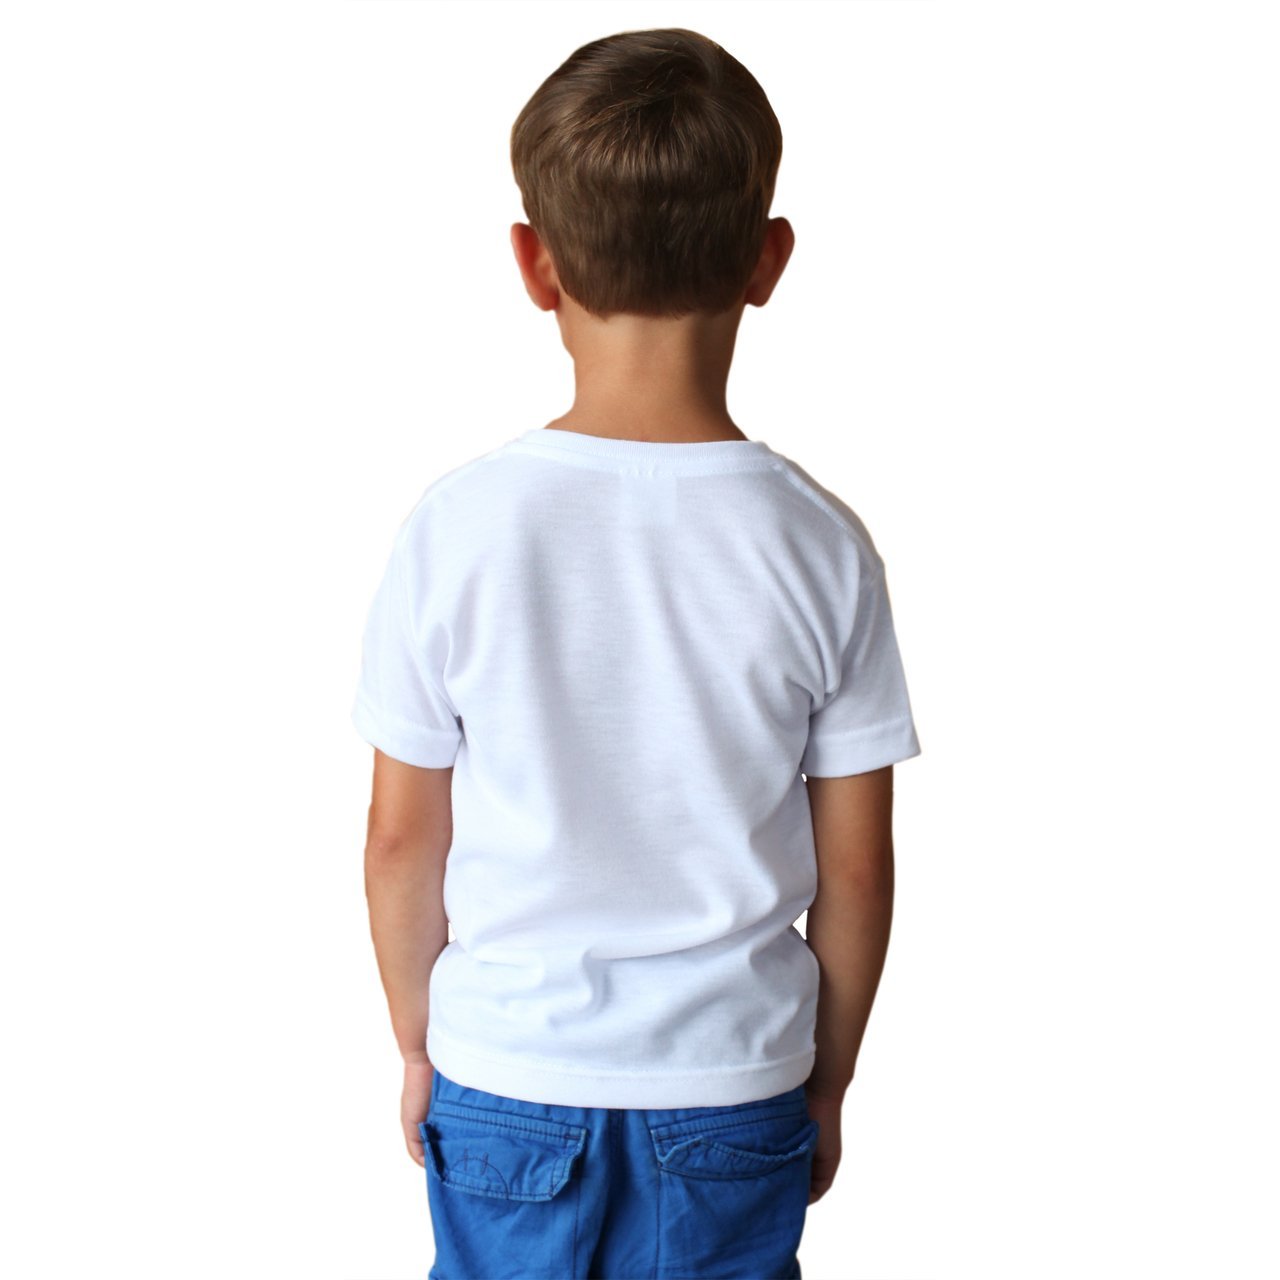 Toddler SpunSoft Tech Short Sleeve T-Shirt